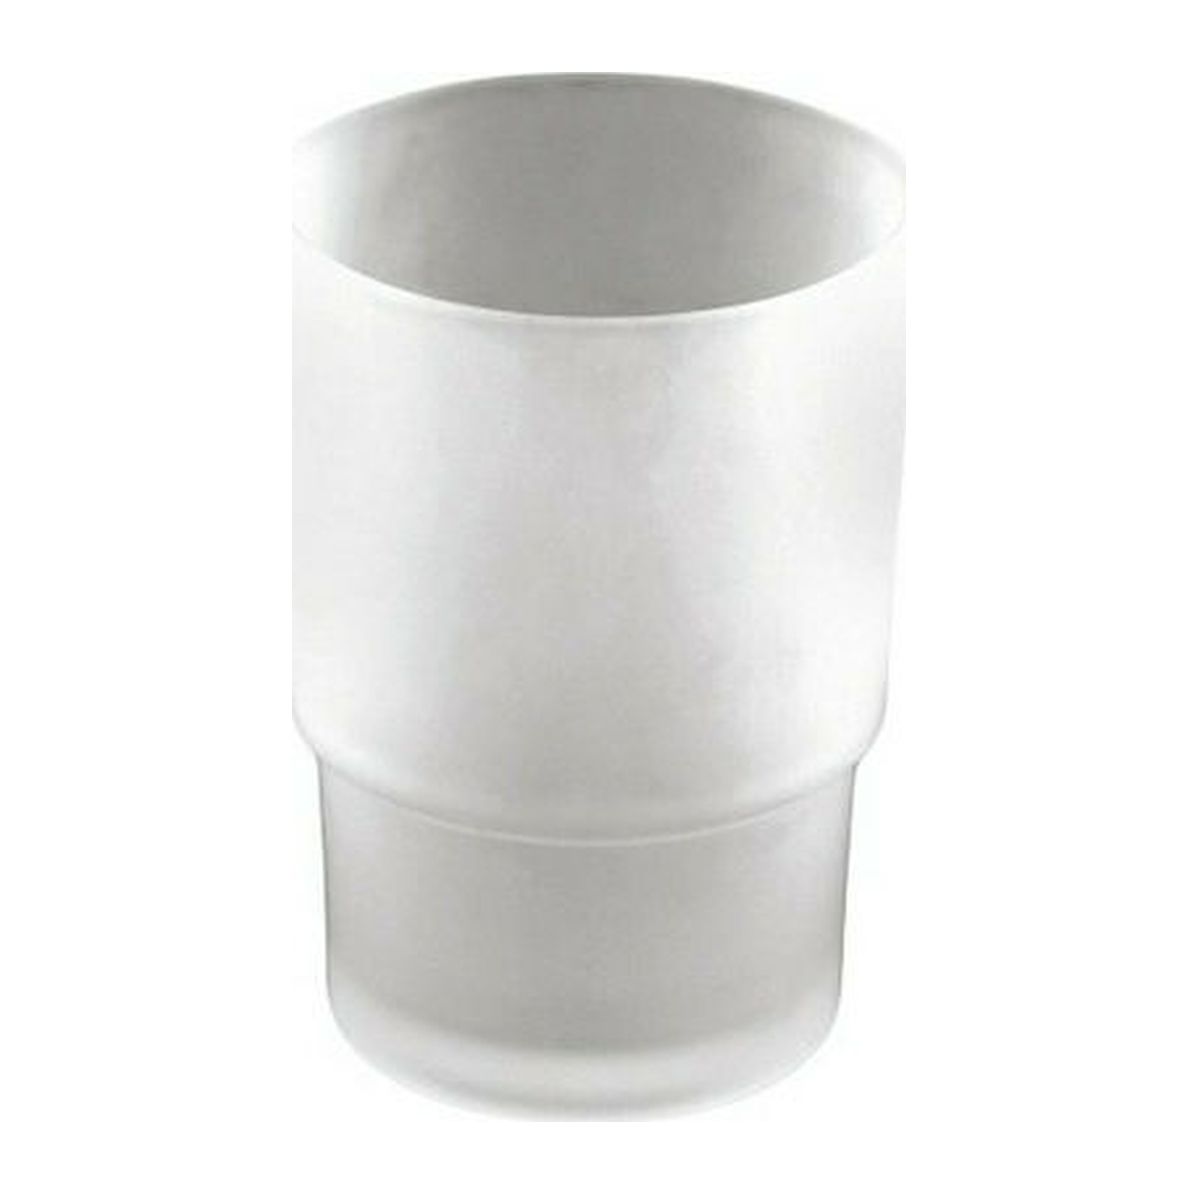 Ποτήρι Ματ Mercury 24-7232 Novo Sanitary Ware Viospiral 